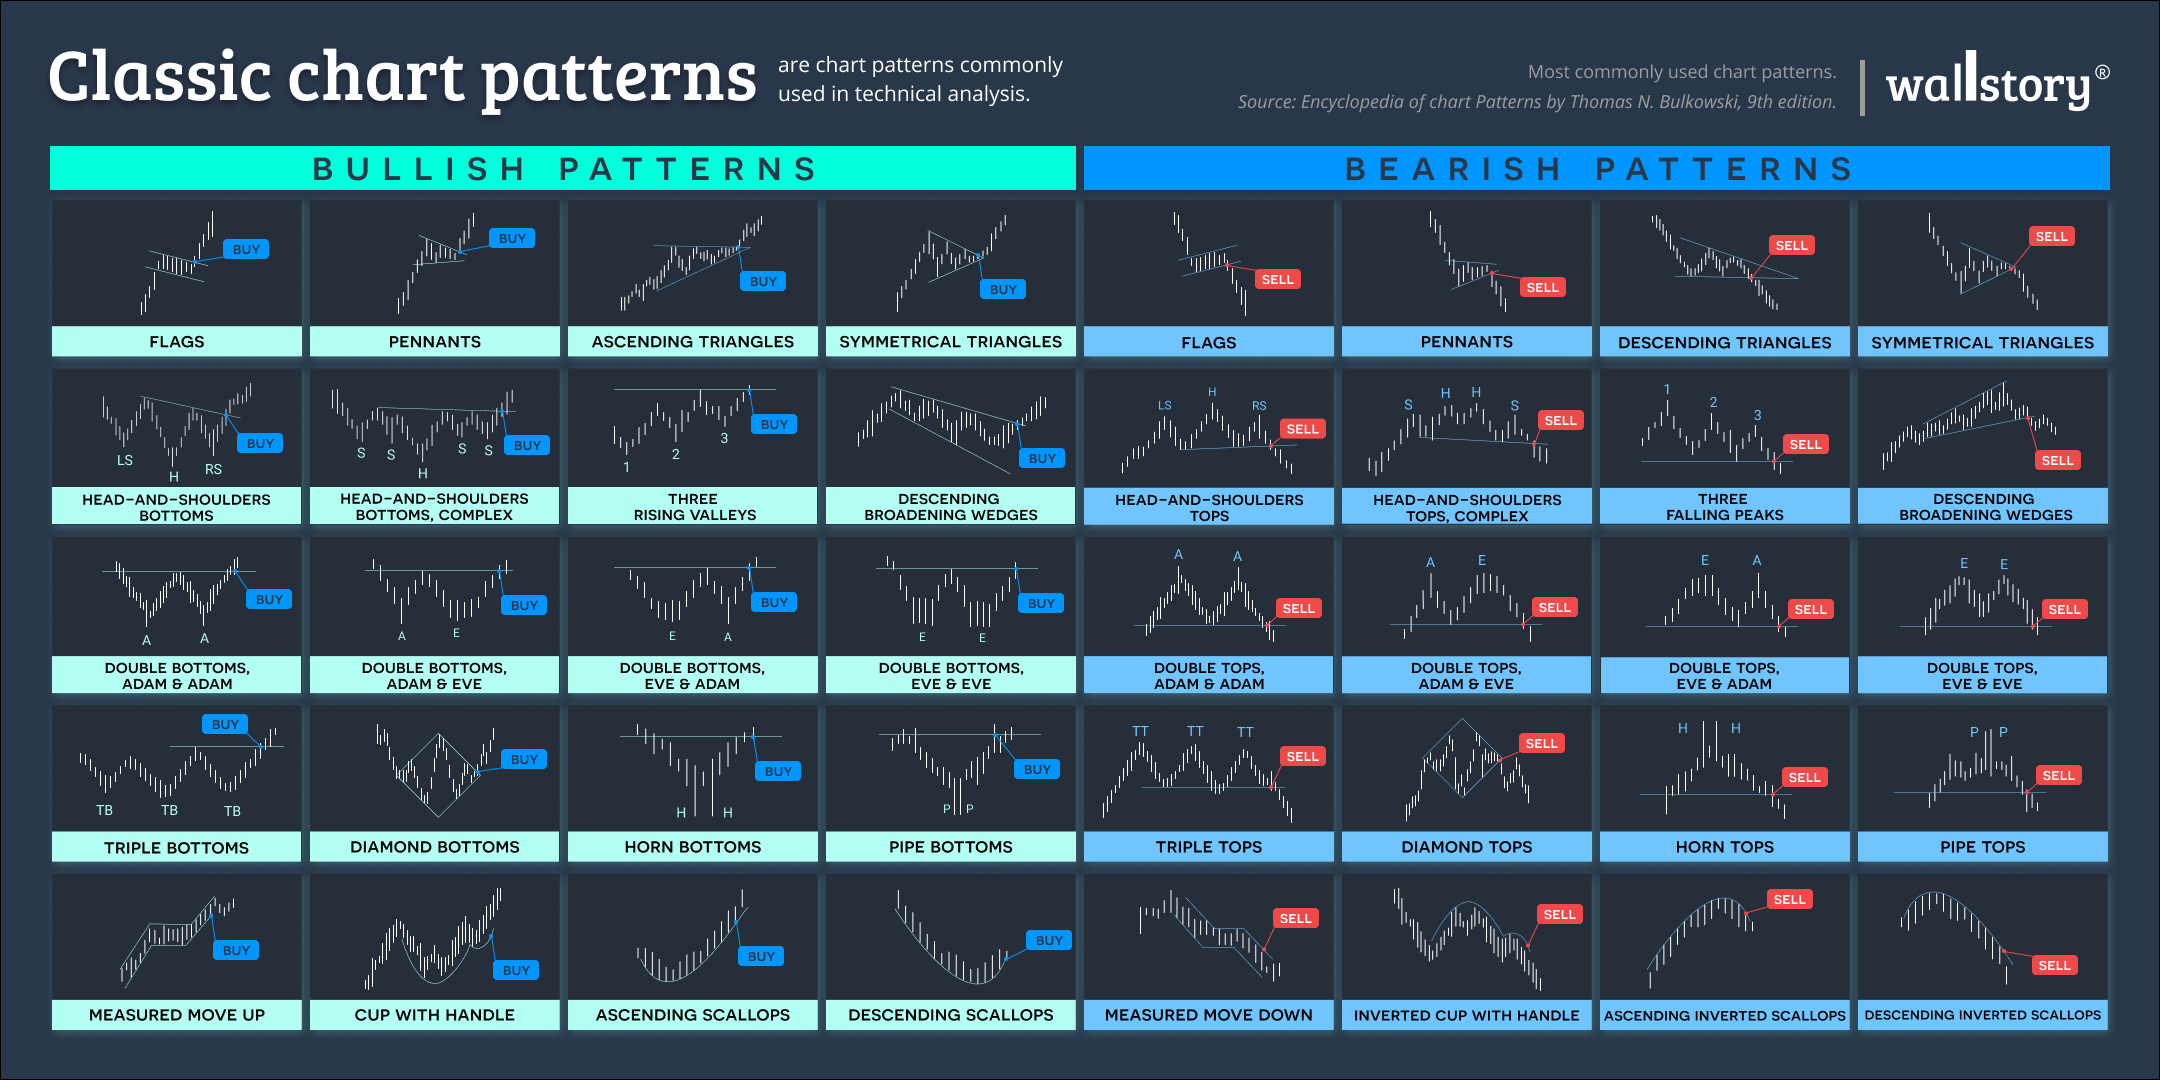 Chart patterns